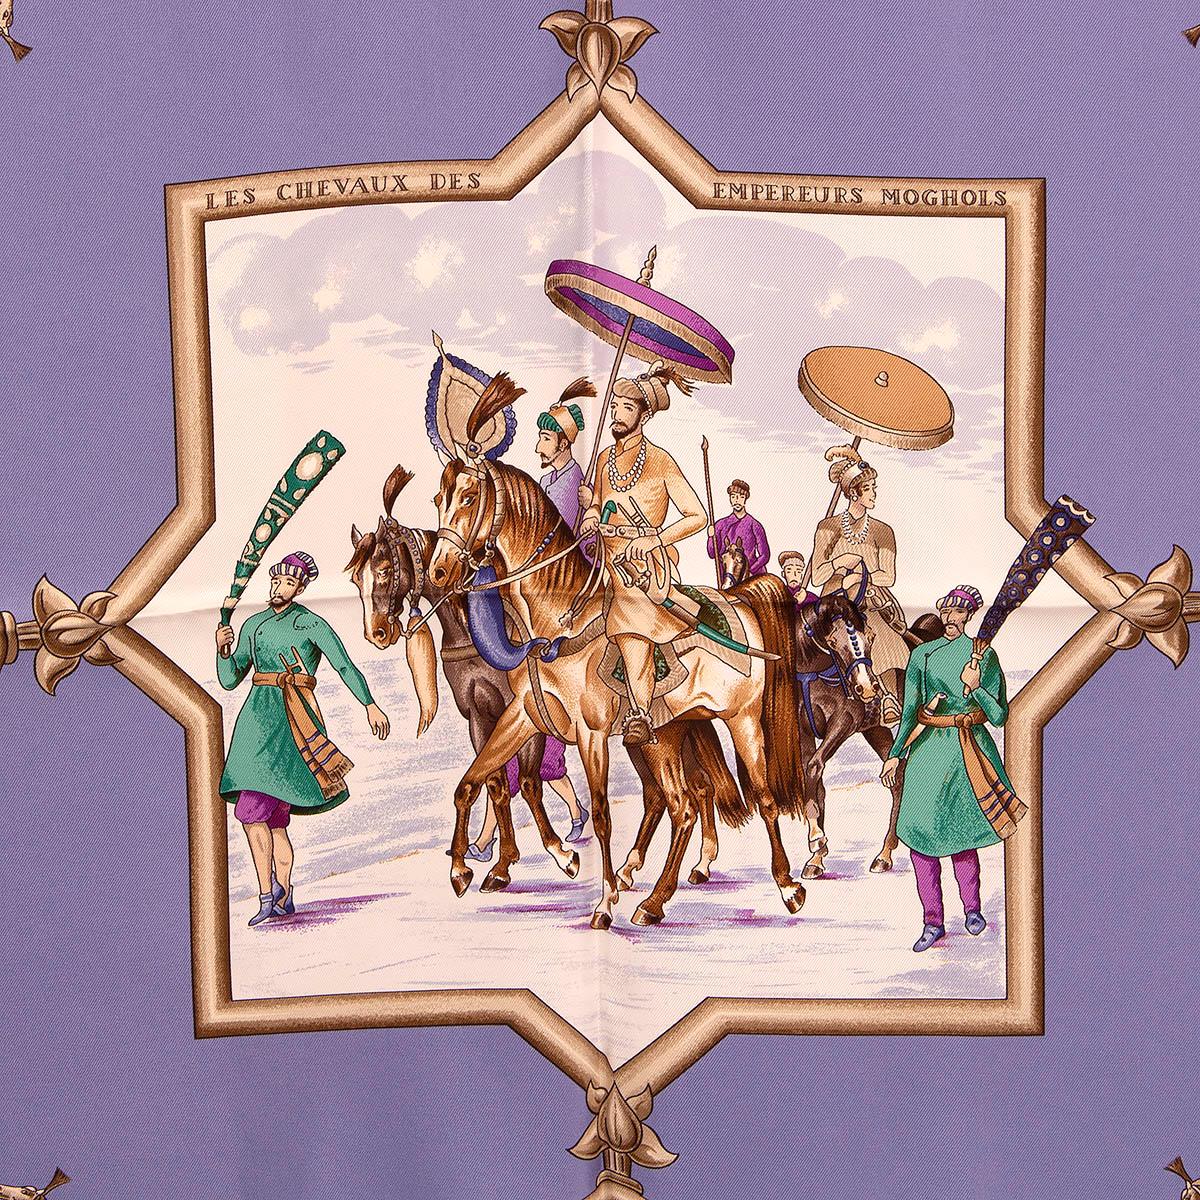 100% authentique Hermés 'Les Cheveaux des Empereurs Moghols 90' foulard par Jean de Fougerolle en twill de soie lavande (100%) avec détails beige, violet, vert et marron. A été porté et est en excellent état.

Mesures
Largeur	90cm